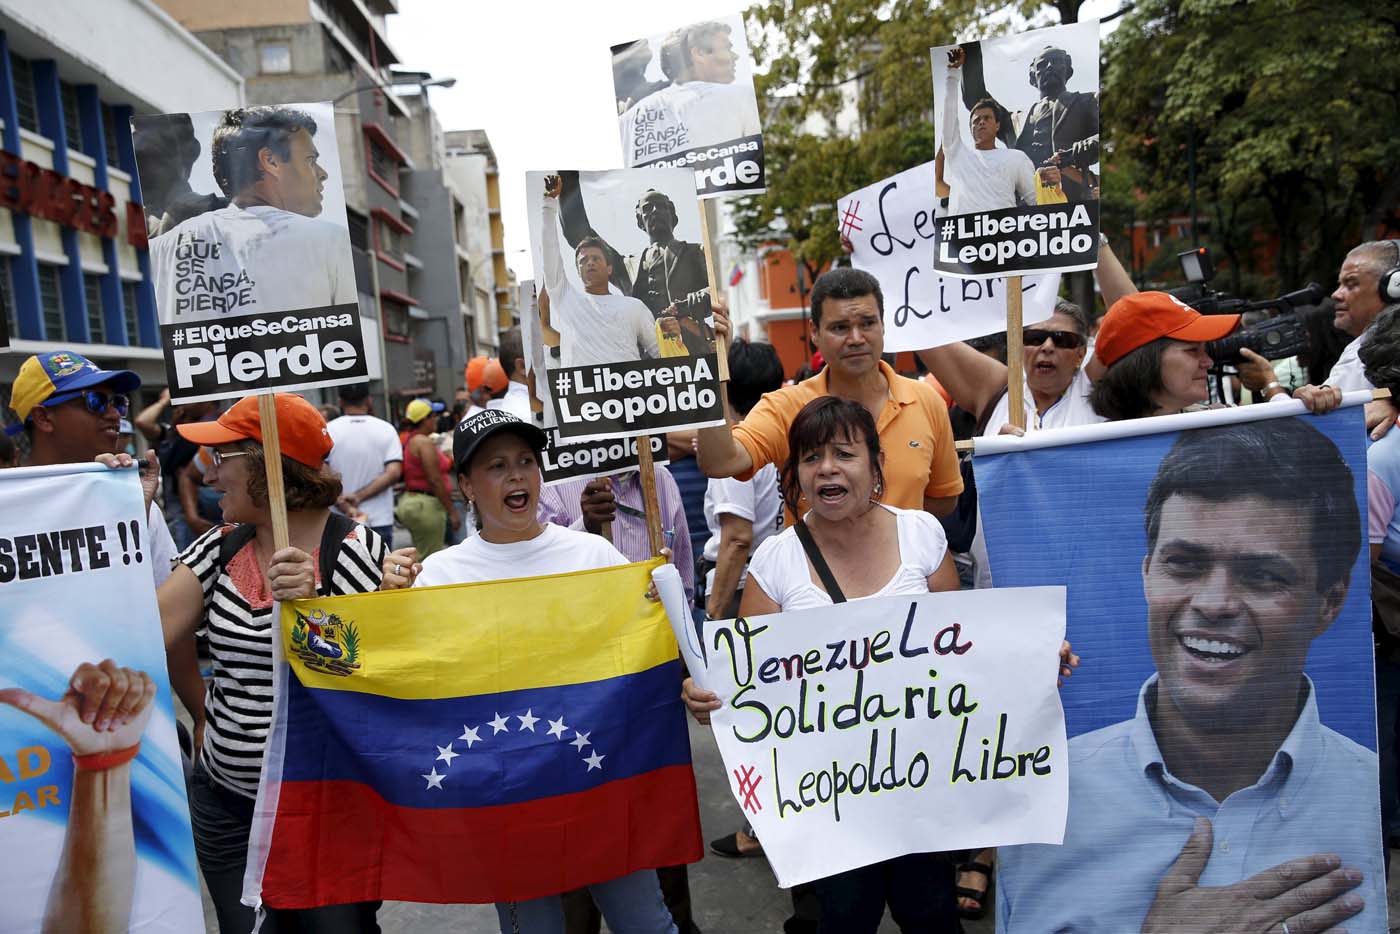 La mayoría de los países latinoamericanos rompen su habitual silencio tras condena a López